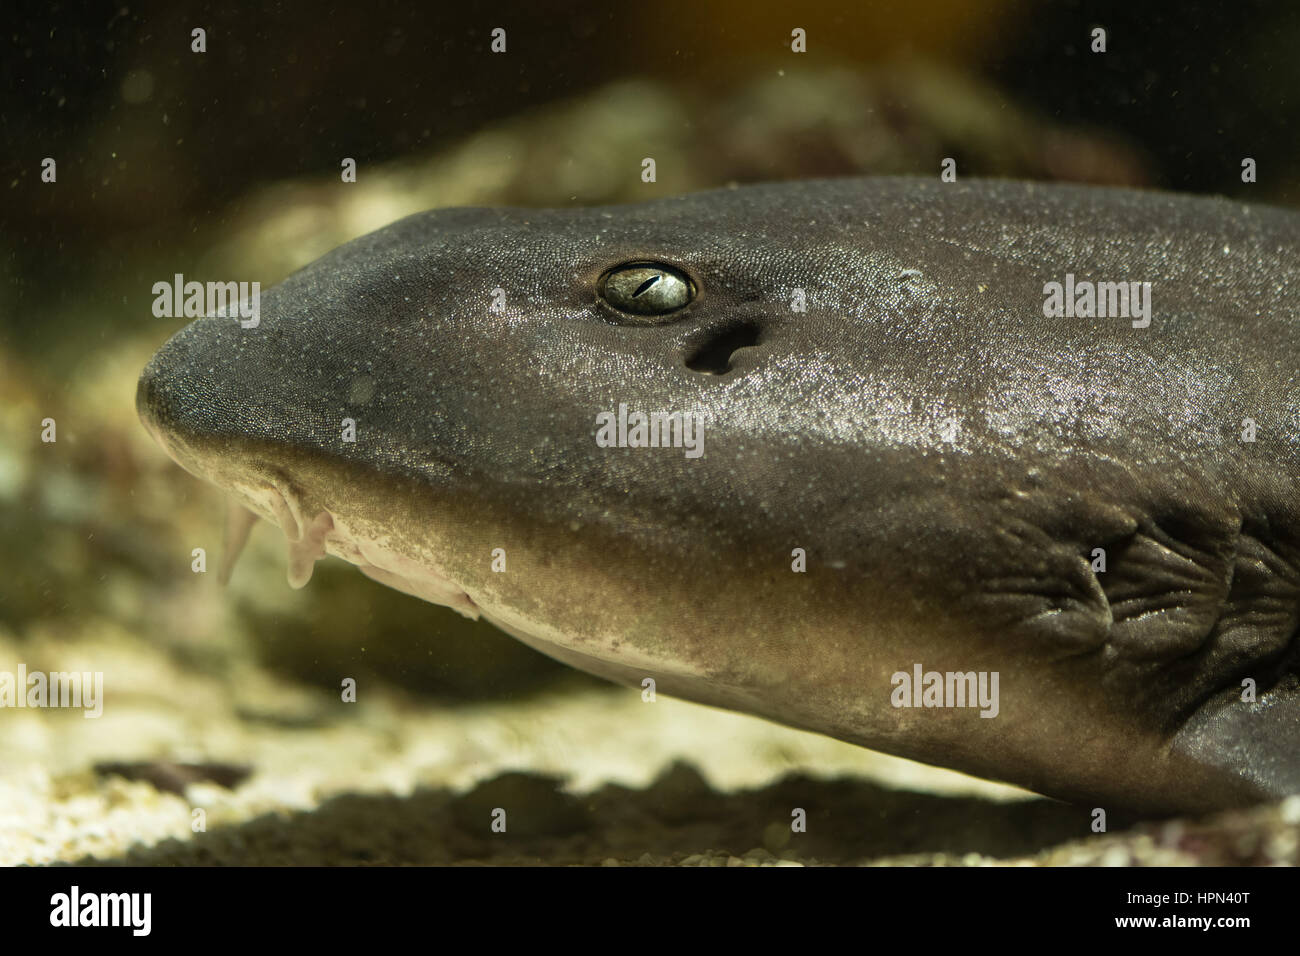 Brownbanded bamboo shark (Chiloscyllium punctatum) head. Adult fish aka cat shark, in the family Hemiscylliidae, showing eye and barbels Stock Photo